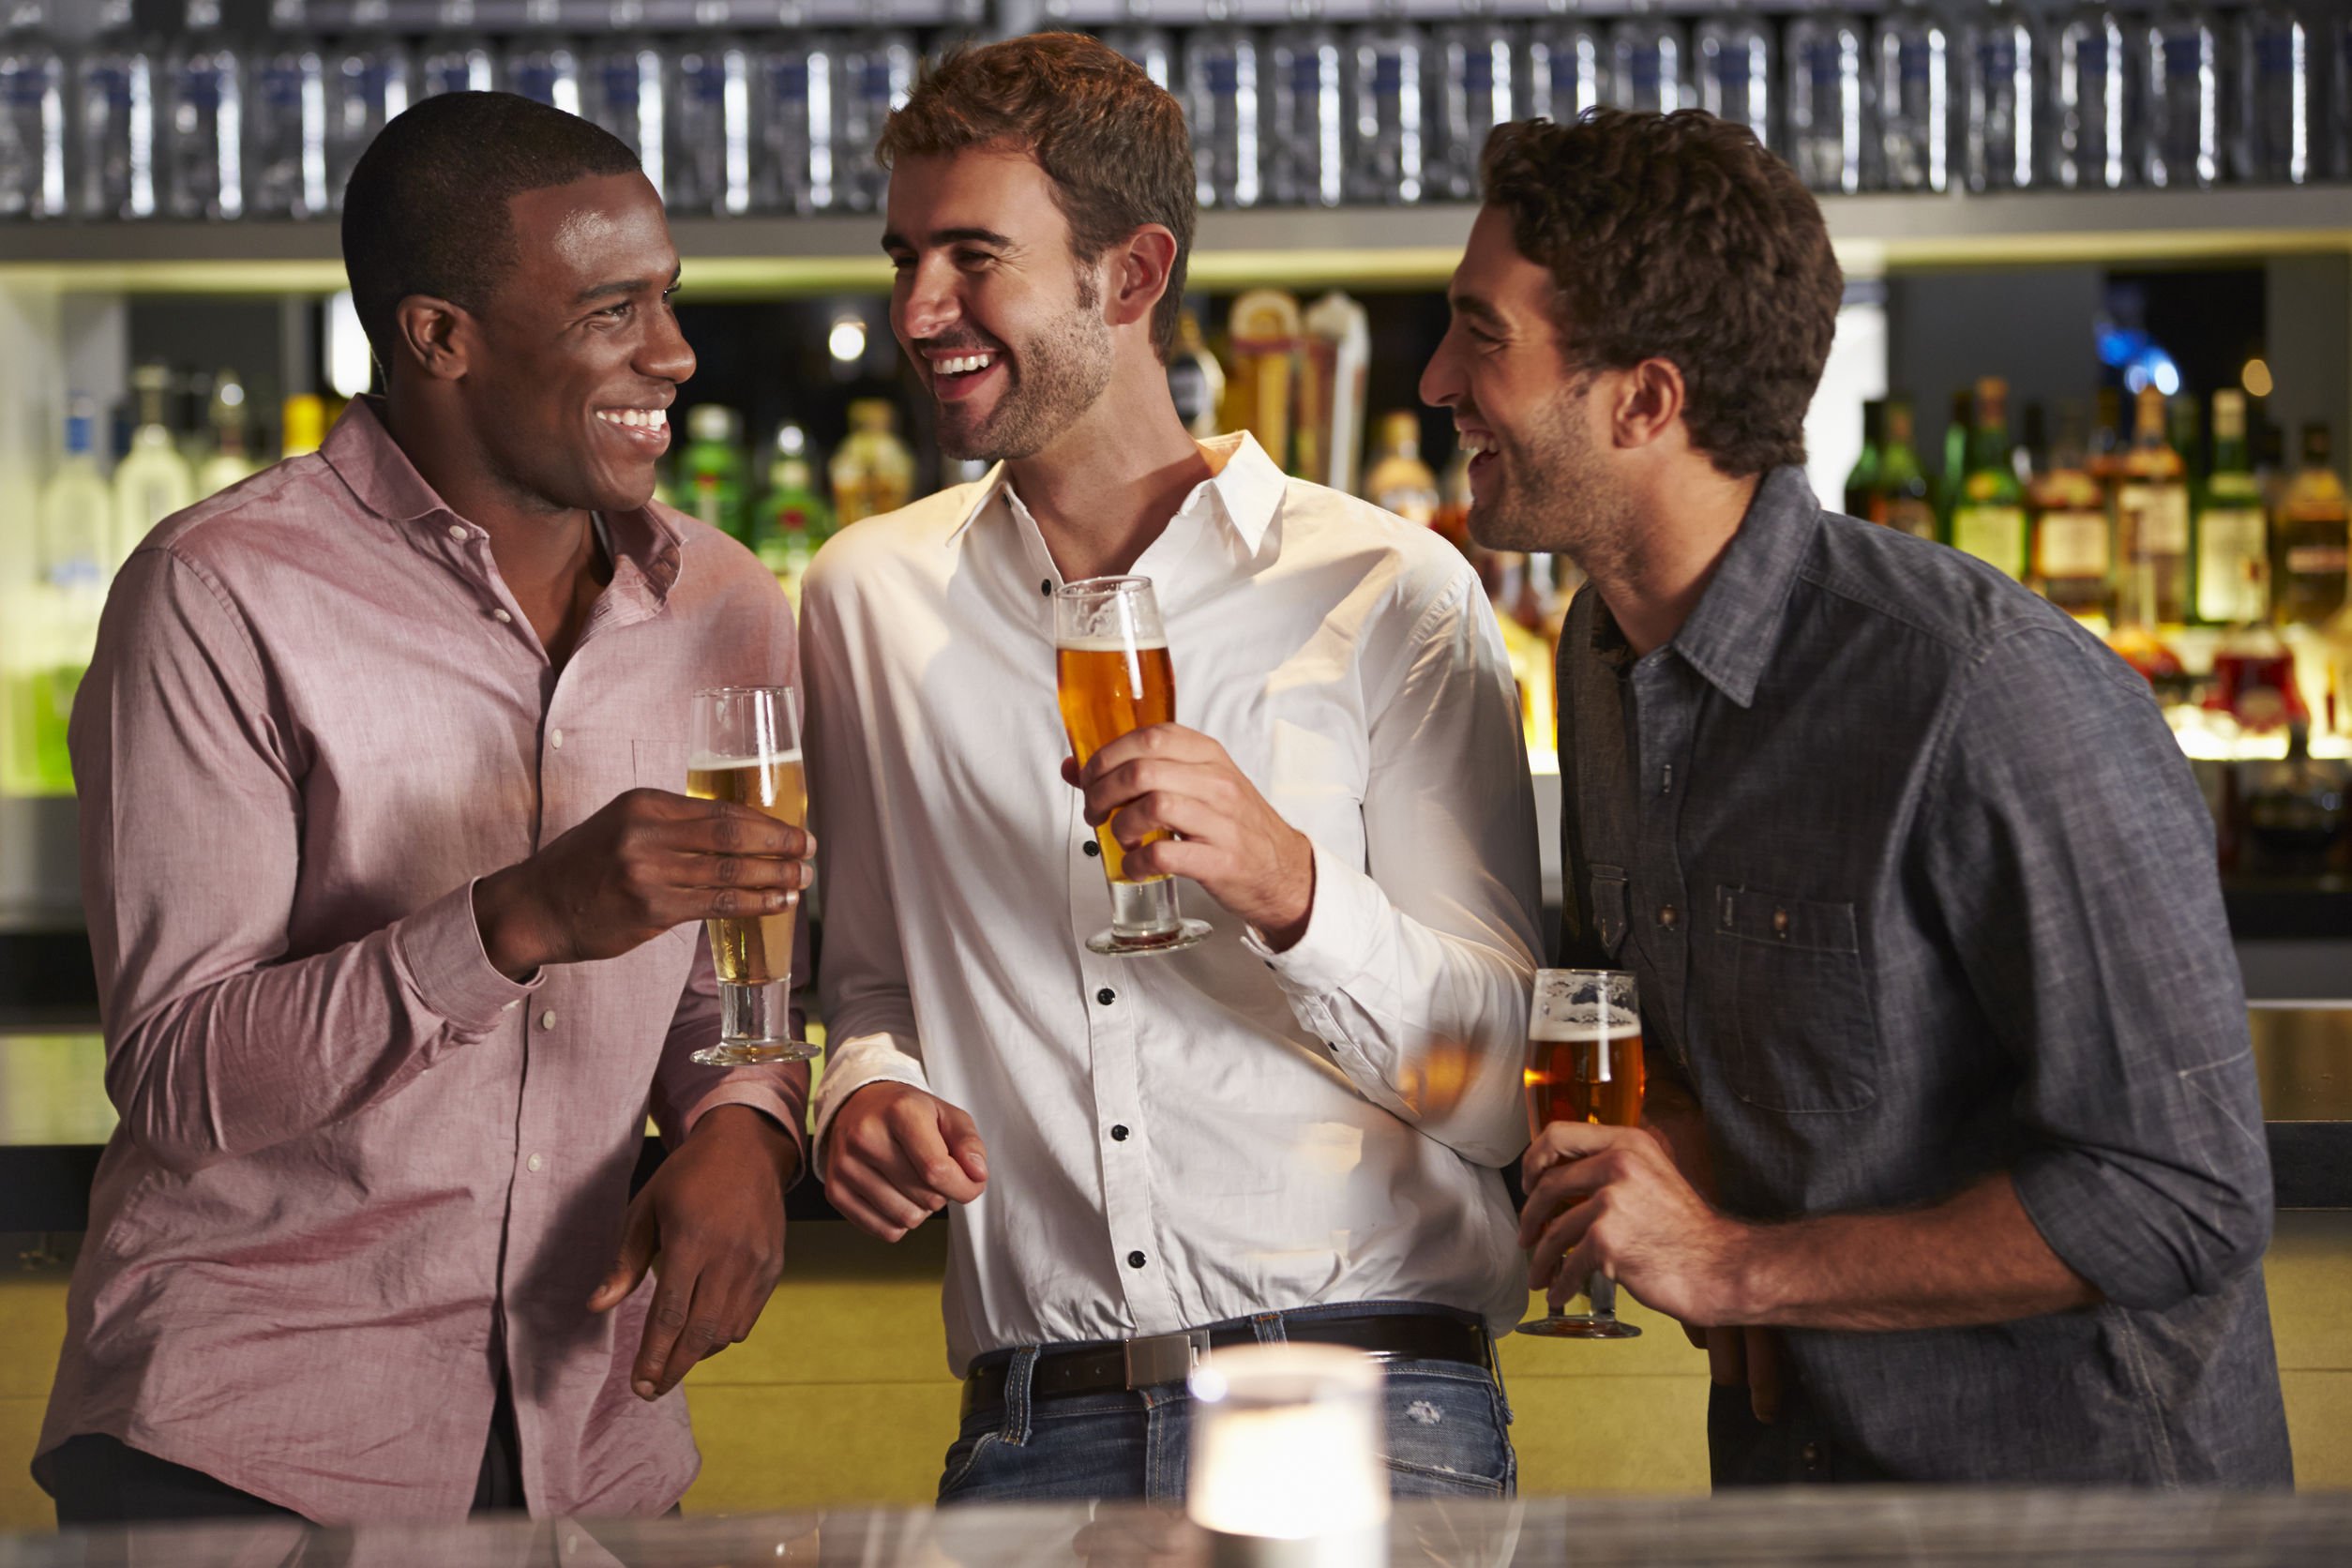 Homens sorrindo, conversando e bebendo cerveja.